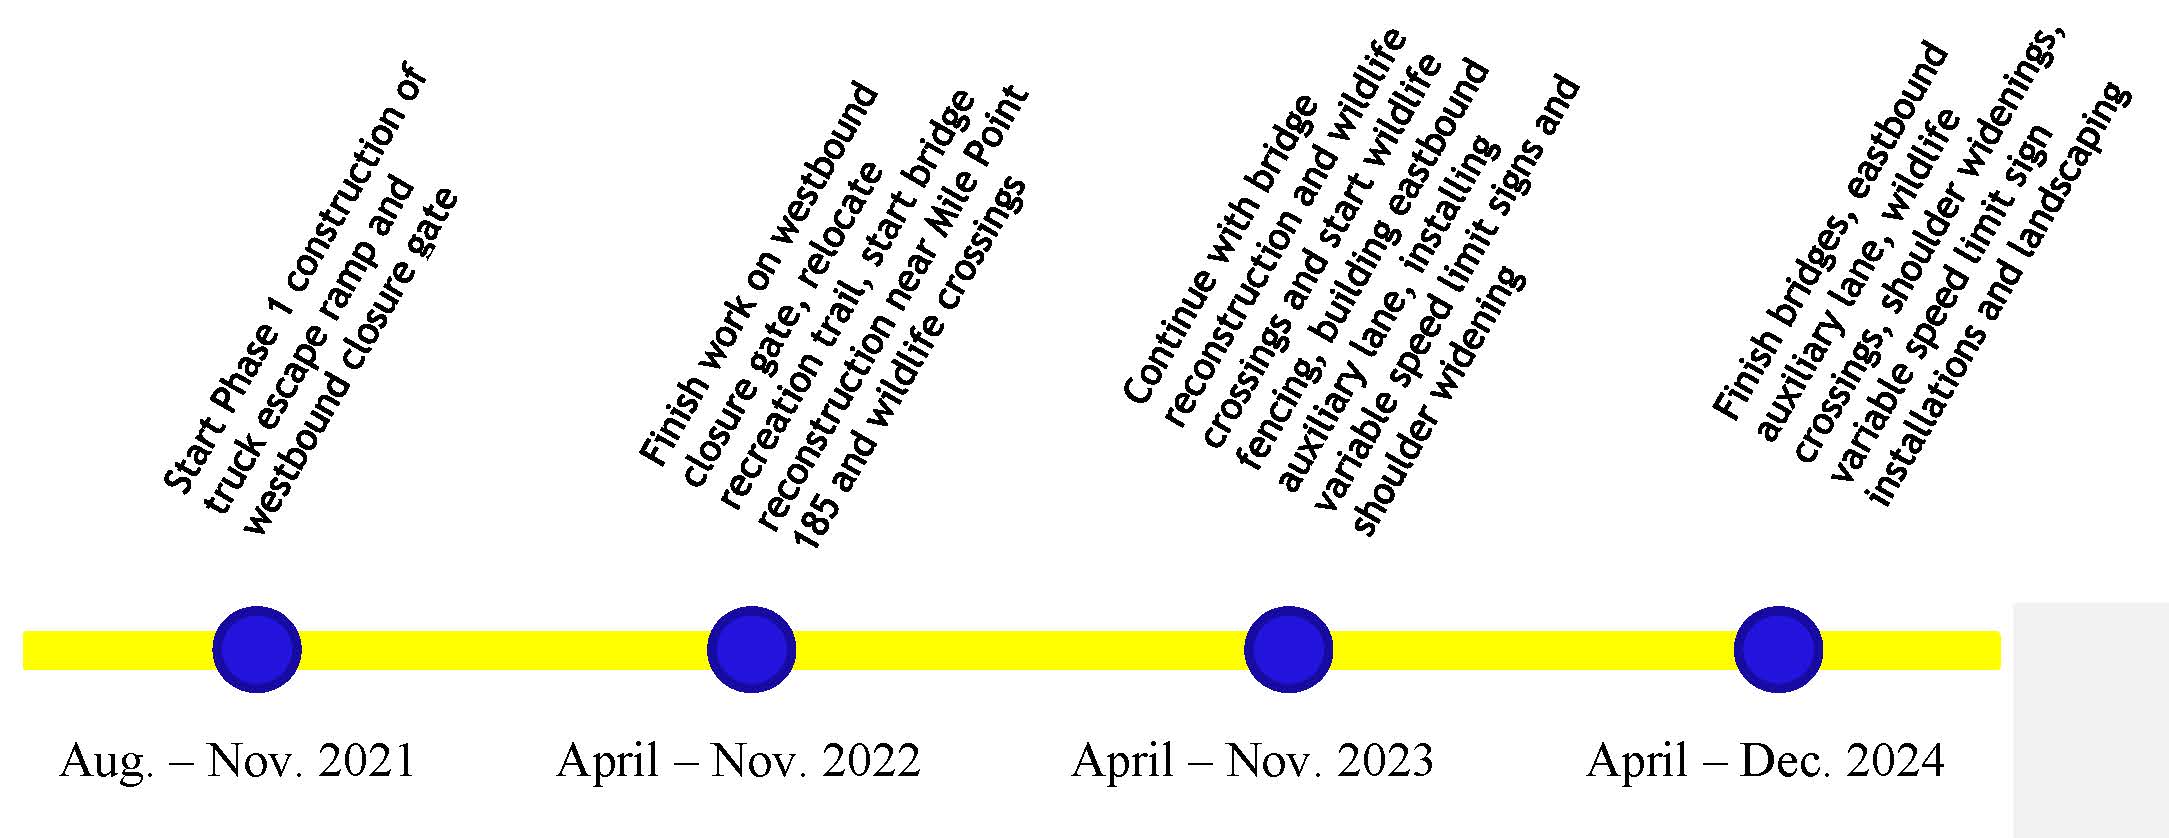 Construction Timeline.jpg detail image